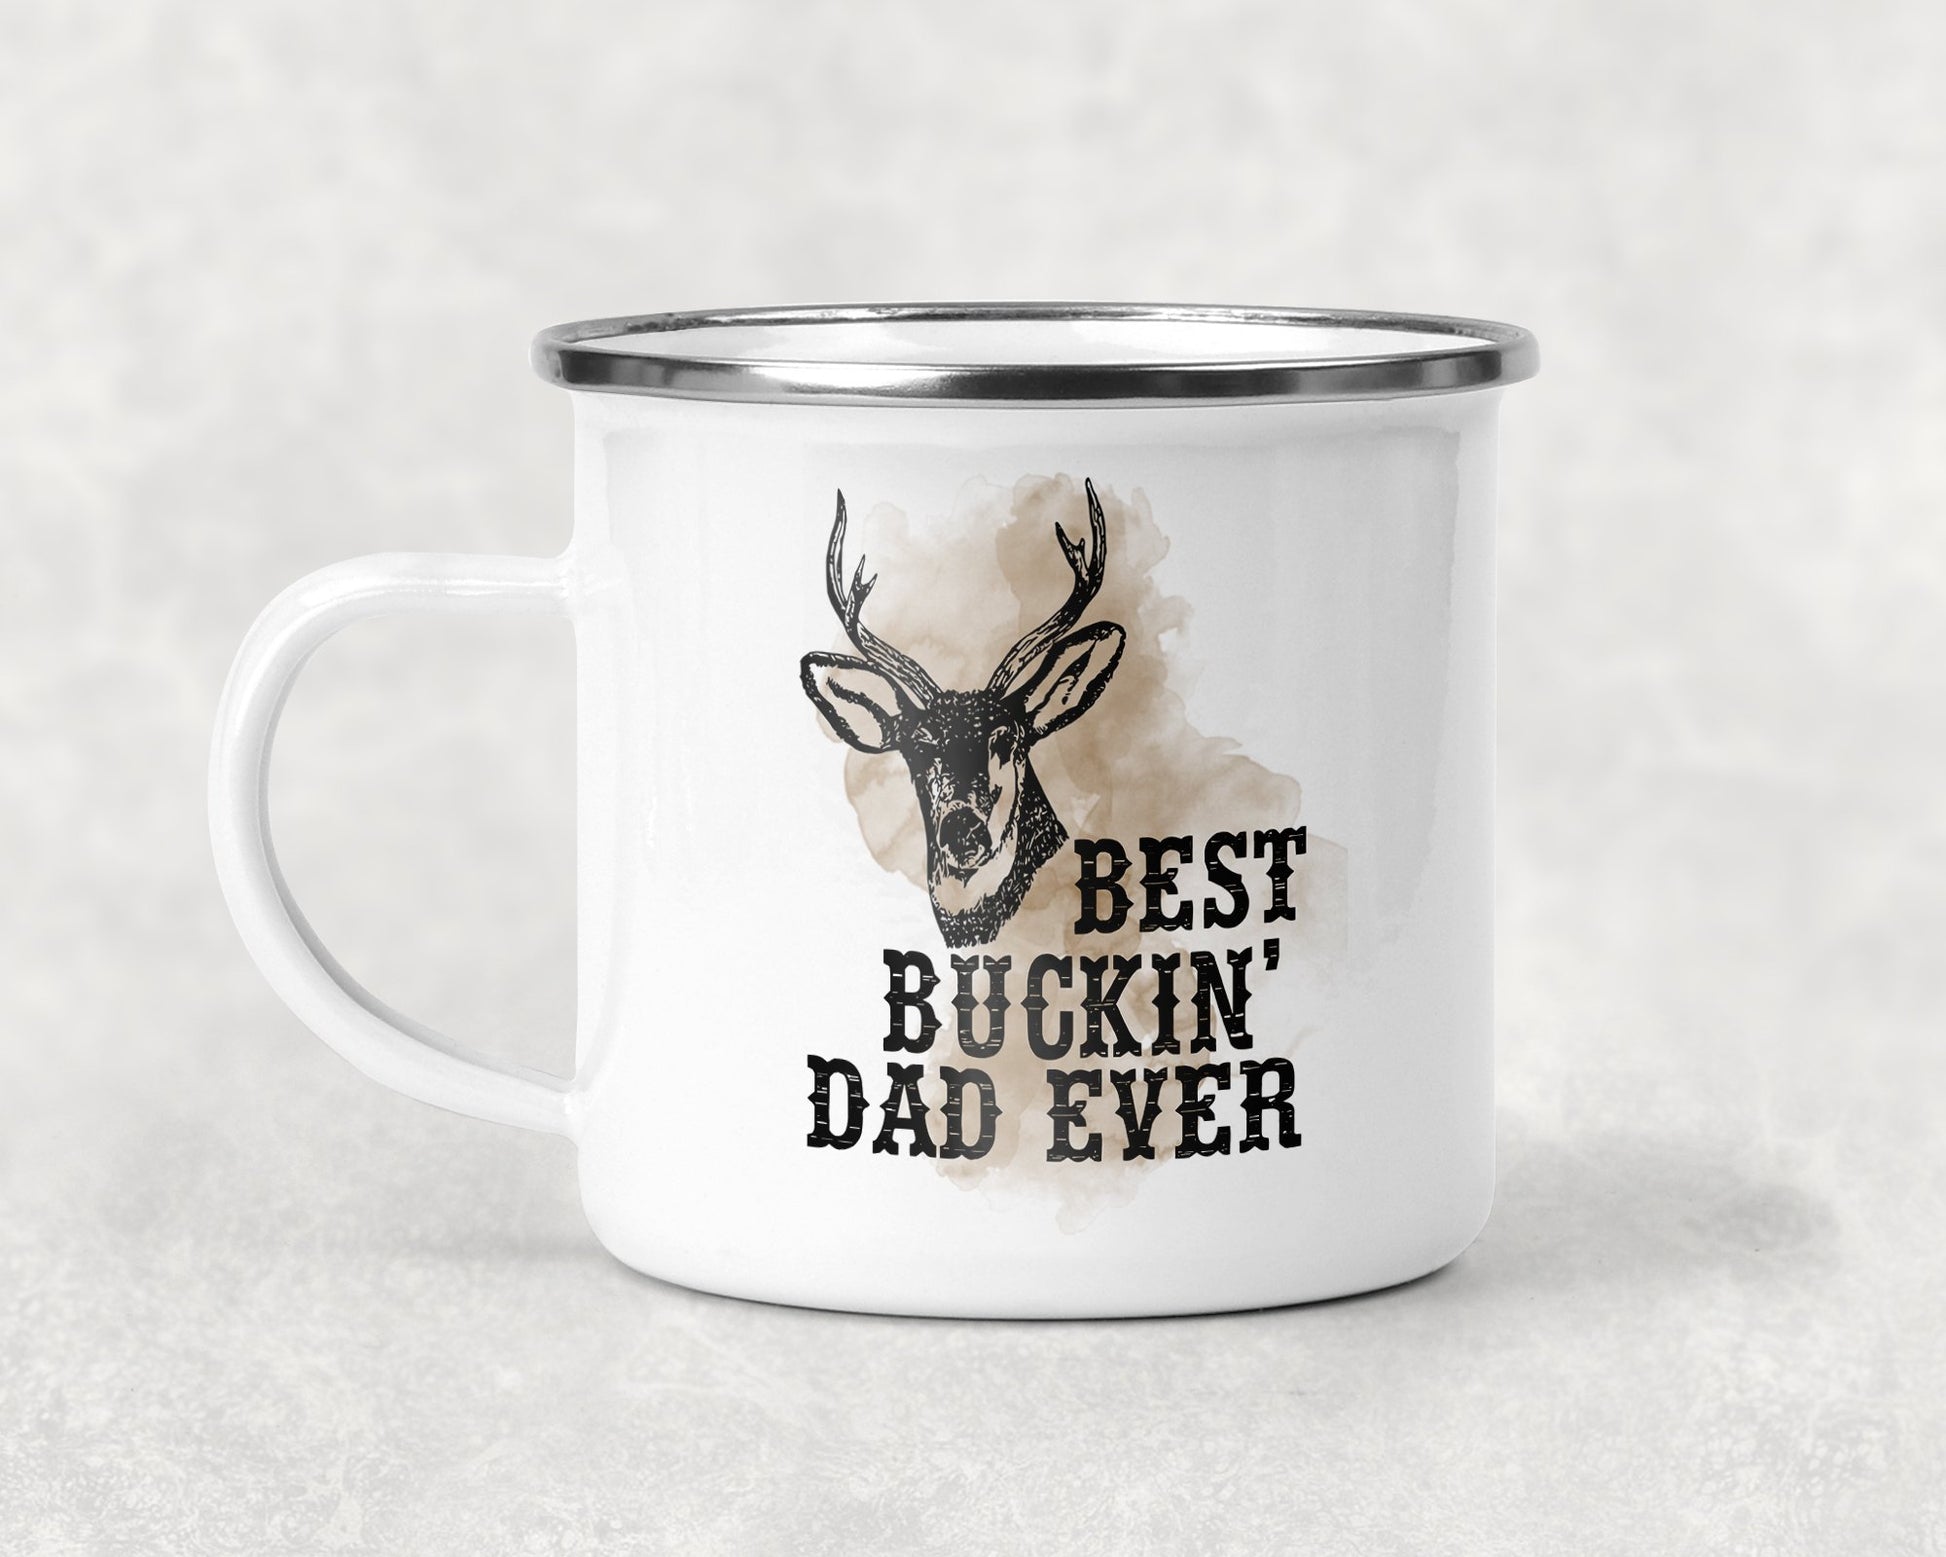 Best Buckin Dad Ever Mug Coffee